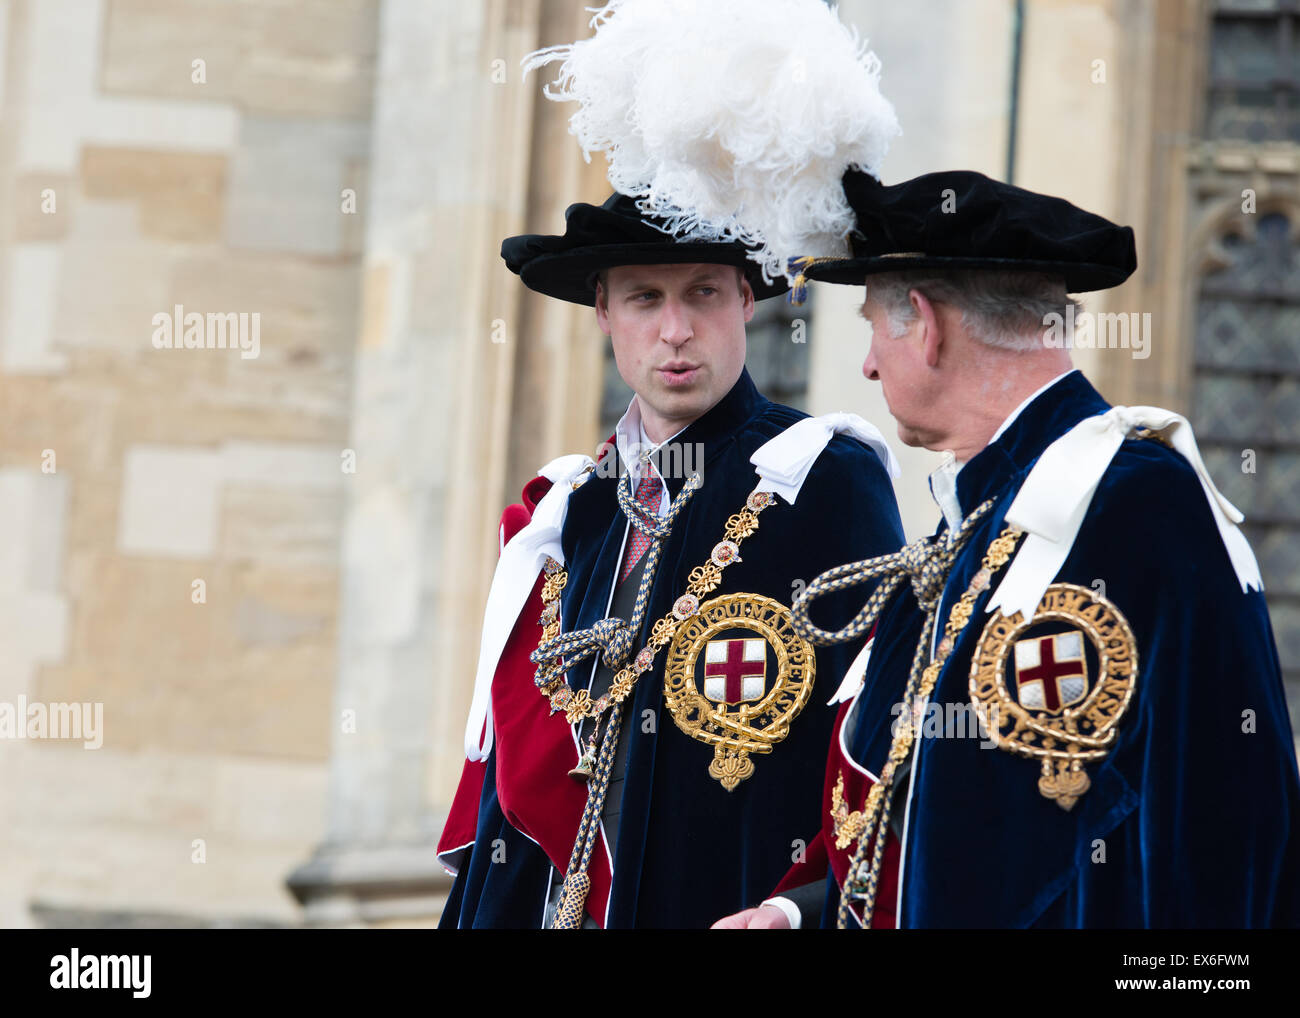 Le prince Andrew parle toPrince Edward, le Prince Charles et le Prince William en arrière-plan le port de la robe Porte-jarretelles Banque D'Images